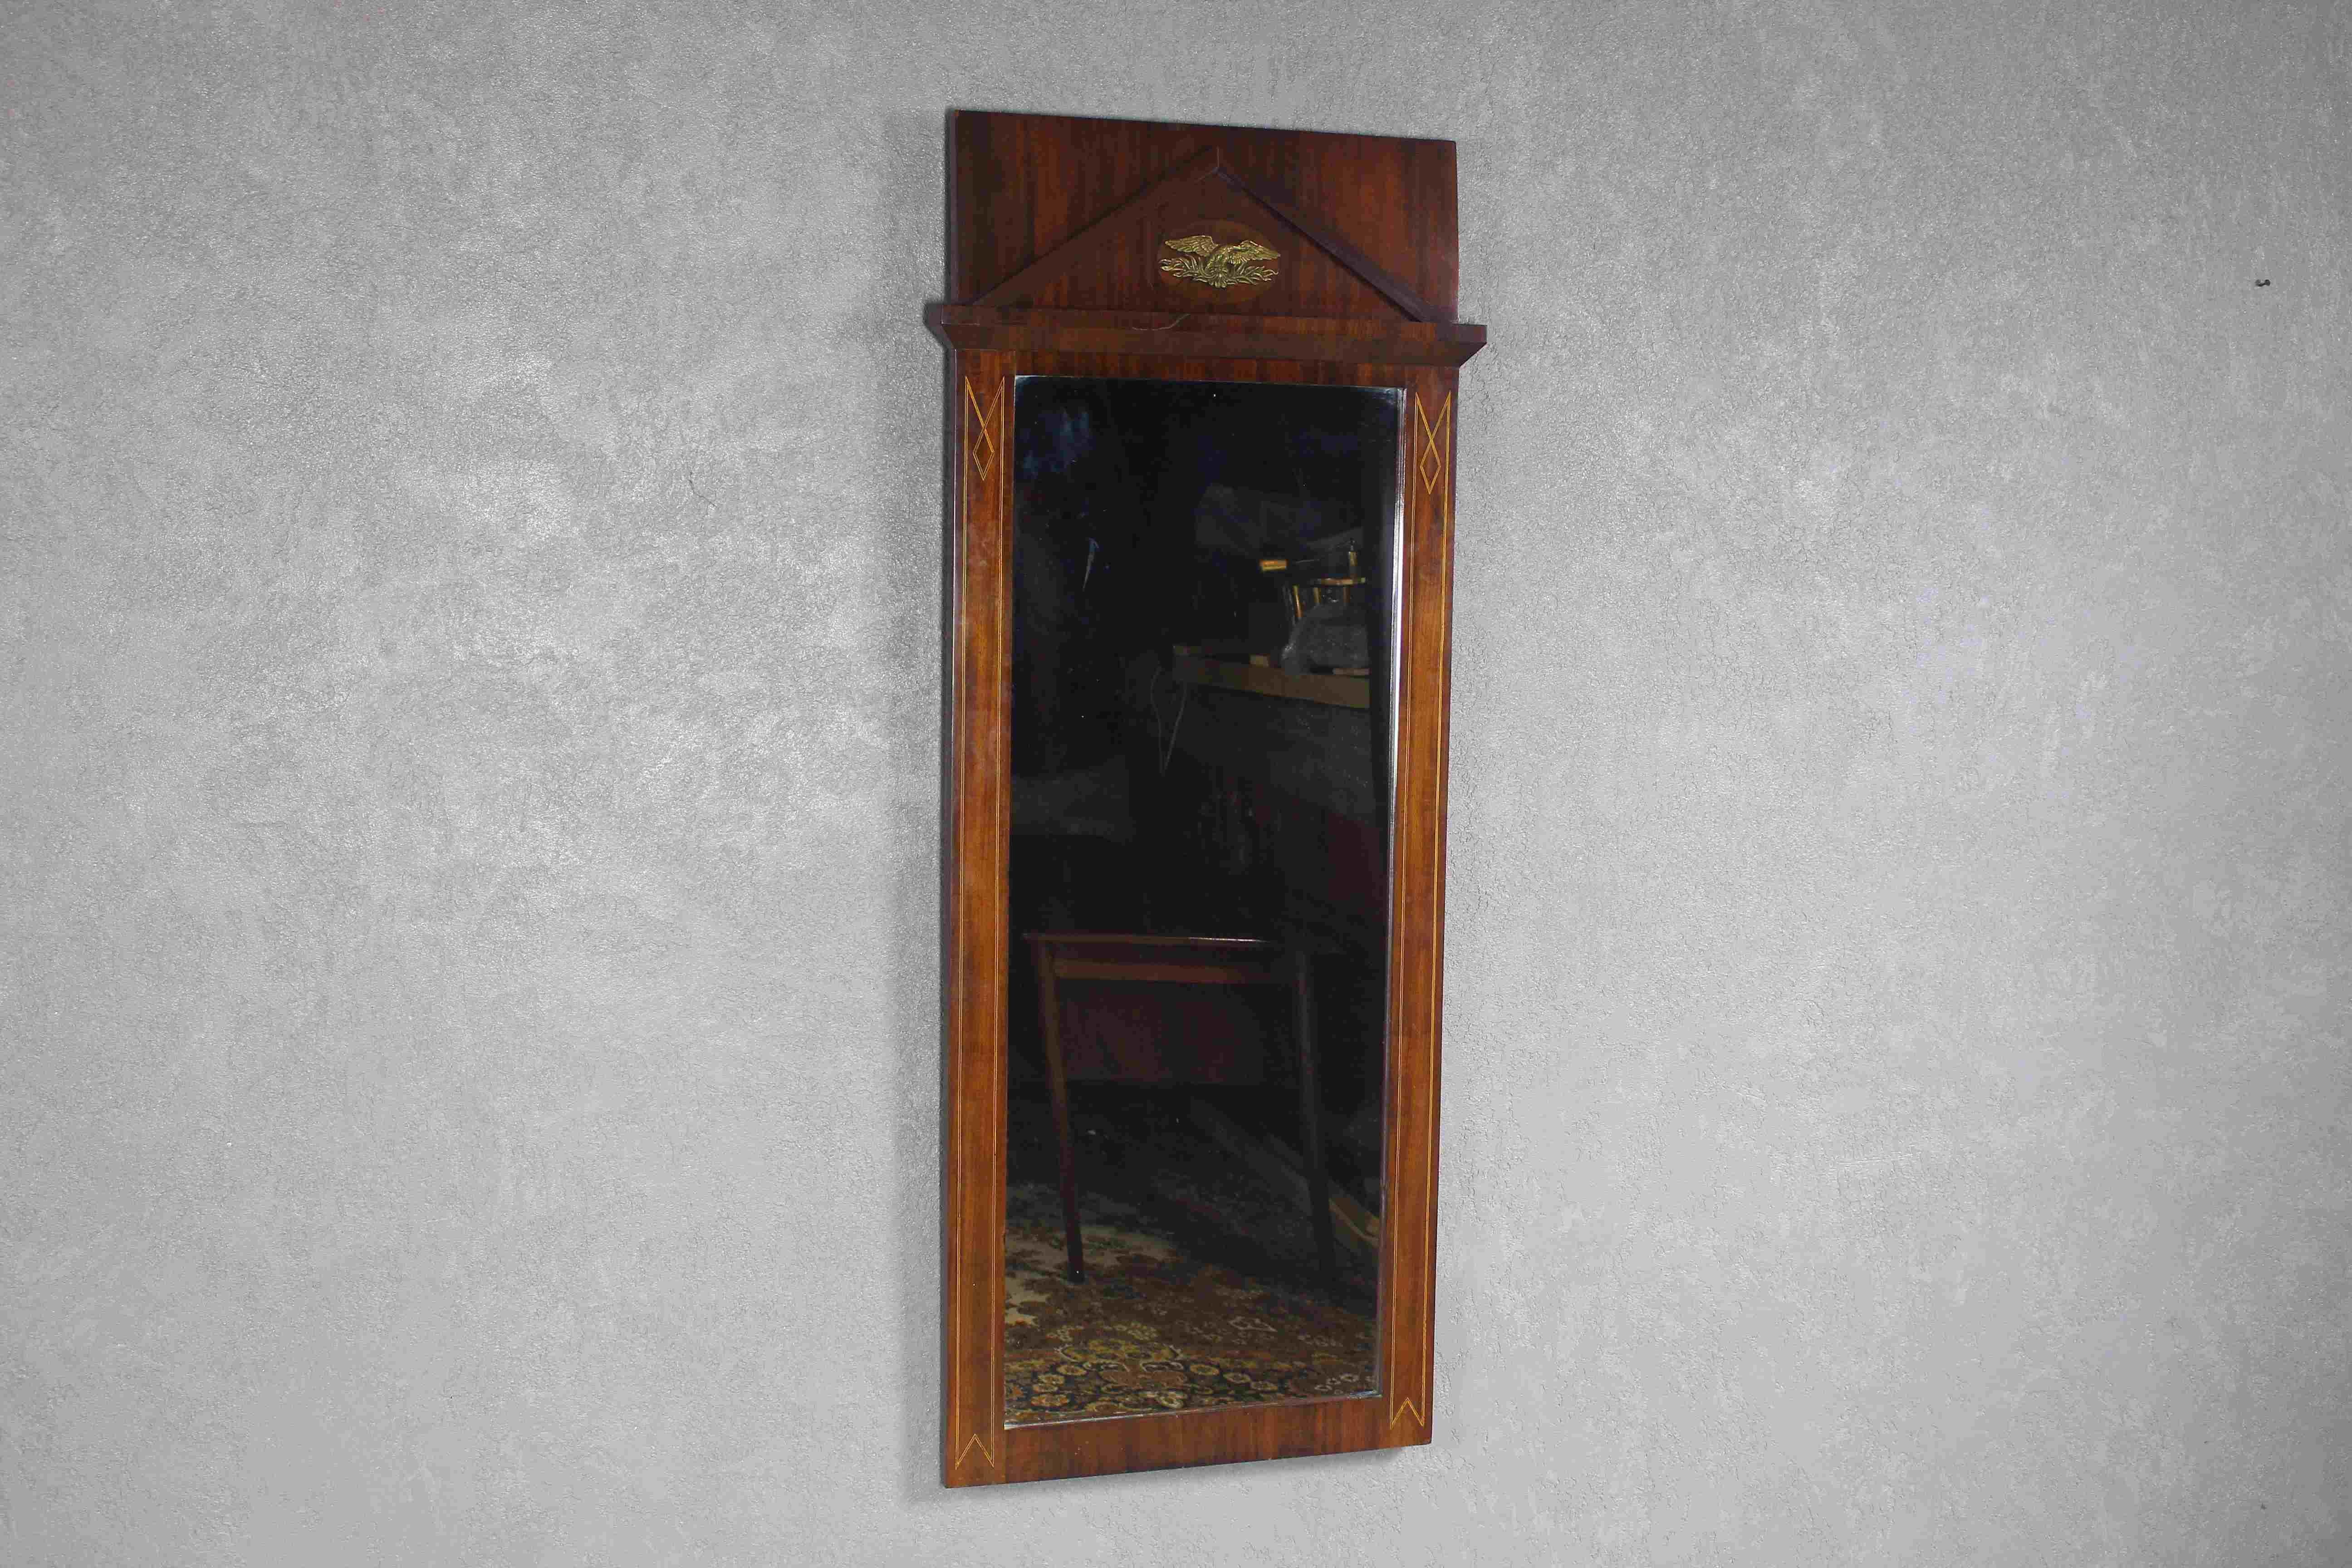 Miroir ancien de style Empire de la fin du 19e siècle.
Le miroir en acajou poli à la main est un meuble de belle facture fabriqué au Danemark à la fin de la période Empire.